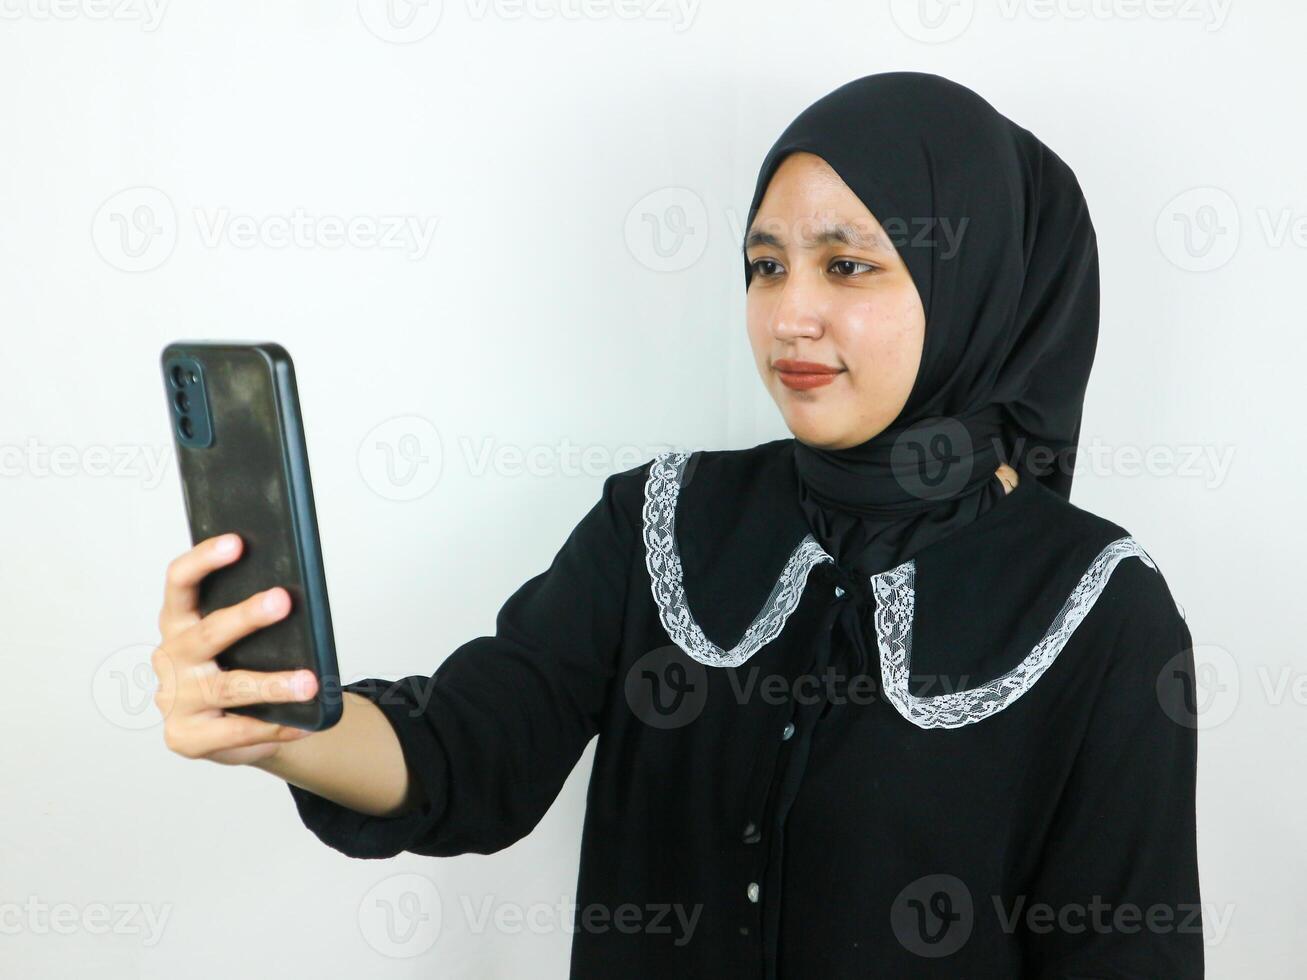 mooi jong Aziatisch vrouw vervelend hijab glimlachen en selfie nemen afbeeldingen door haar mobiel telefoon foto